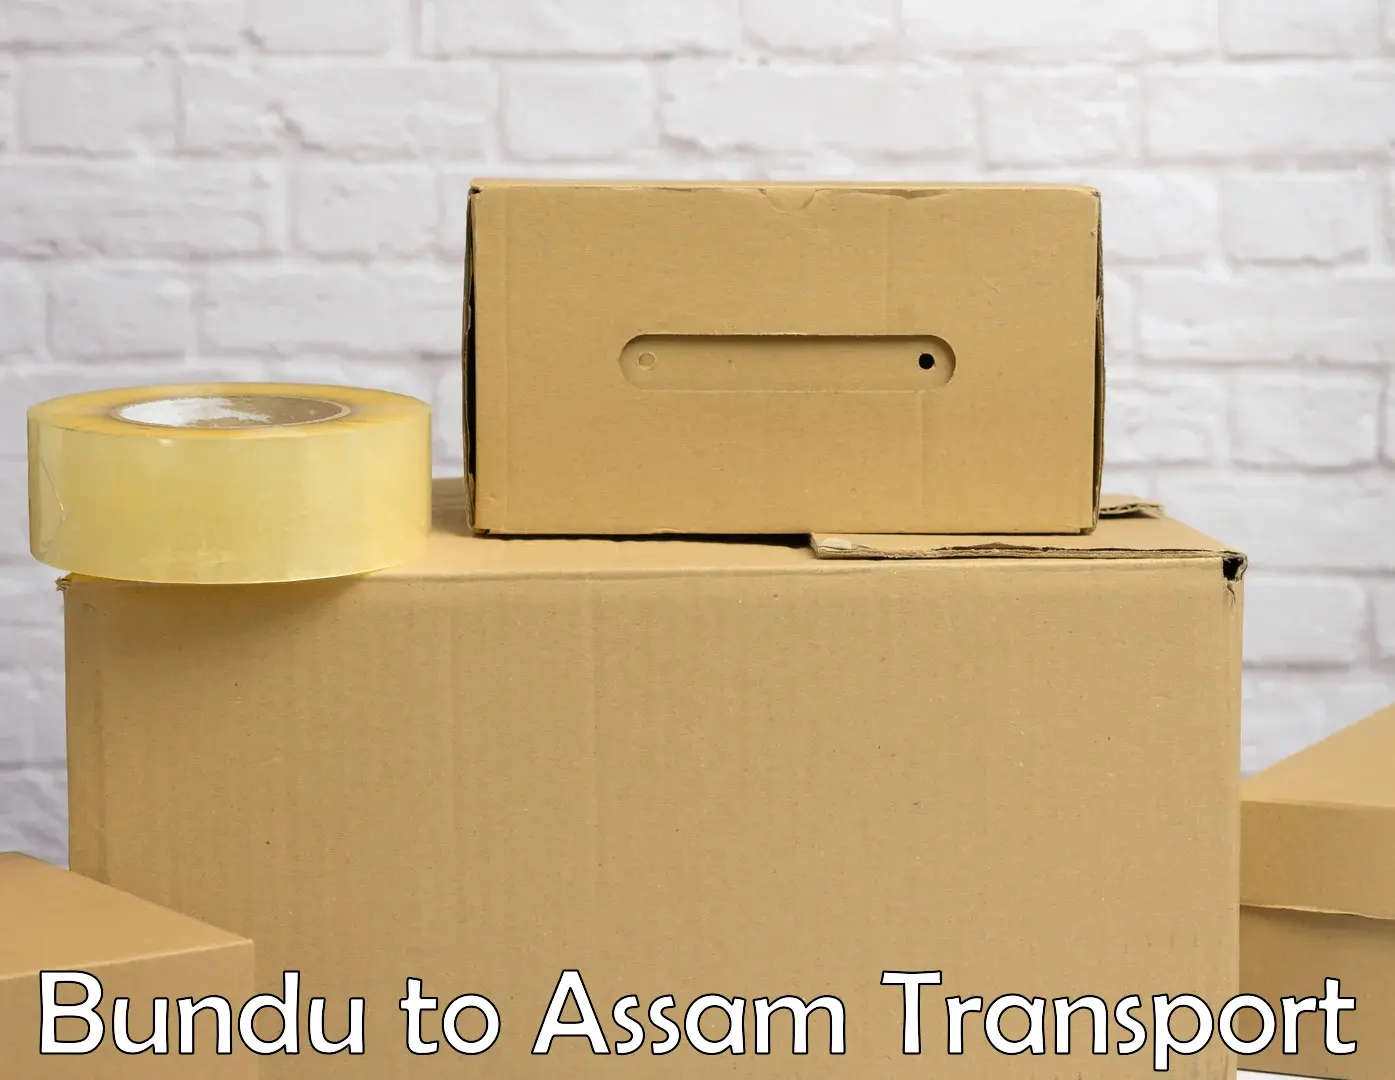 Pick up transport service Bundu to Assam